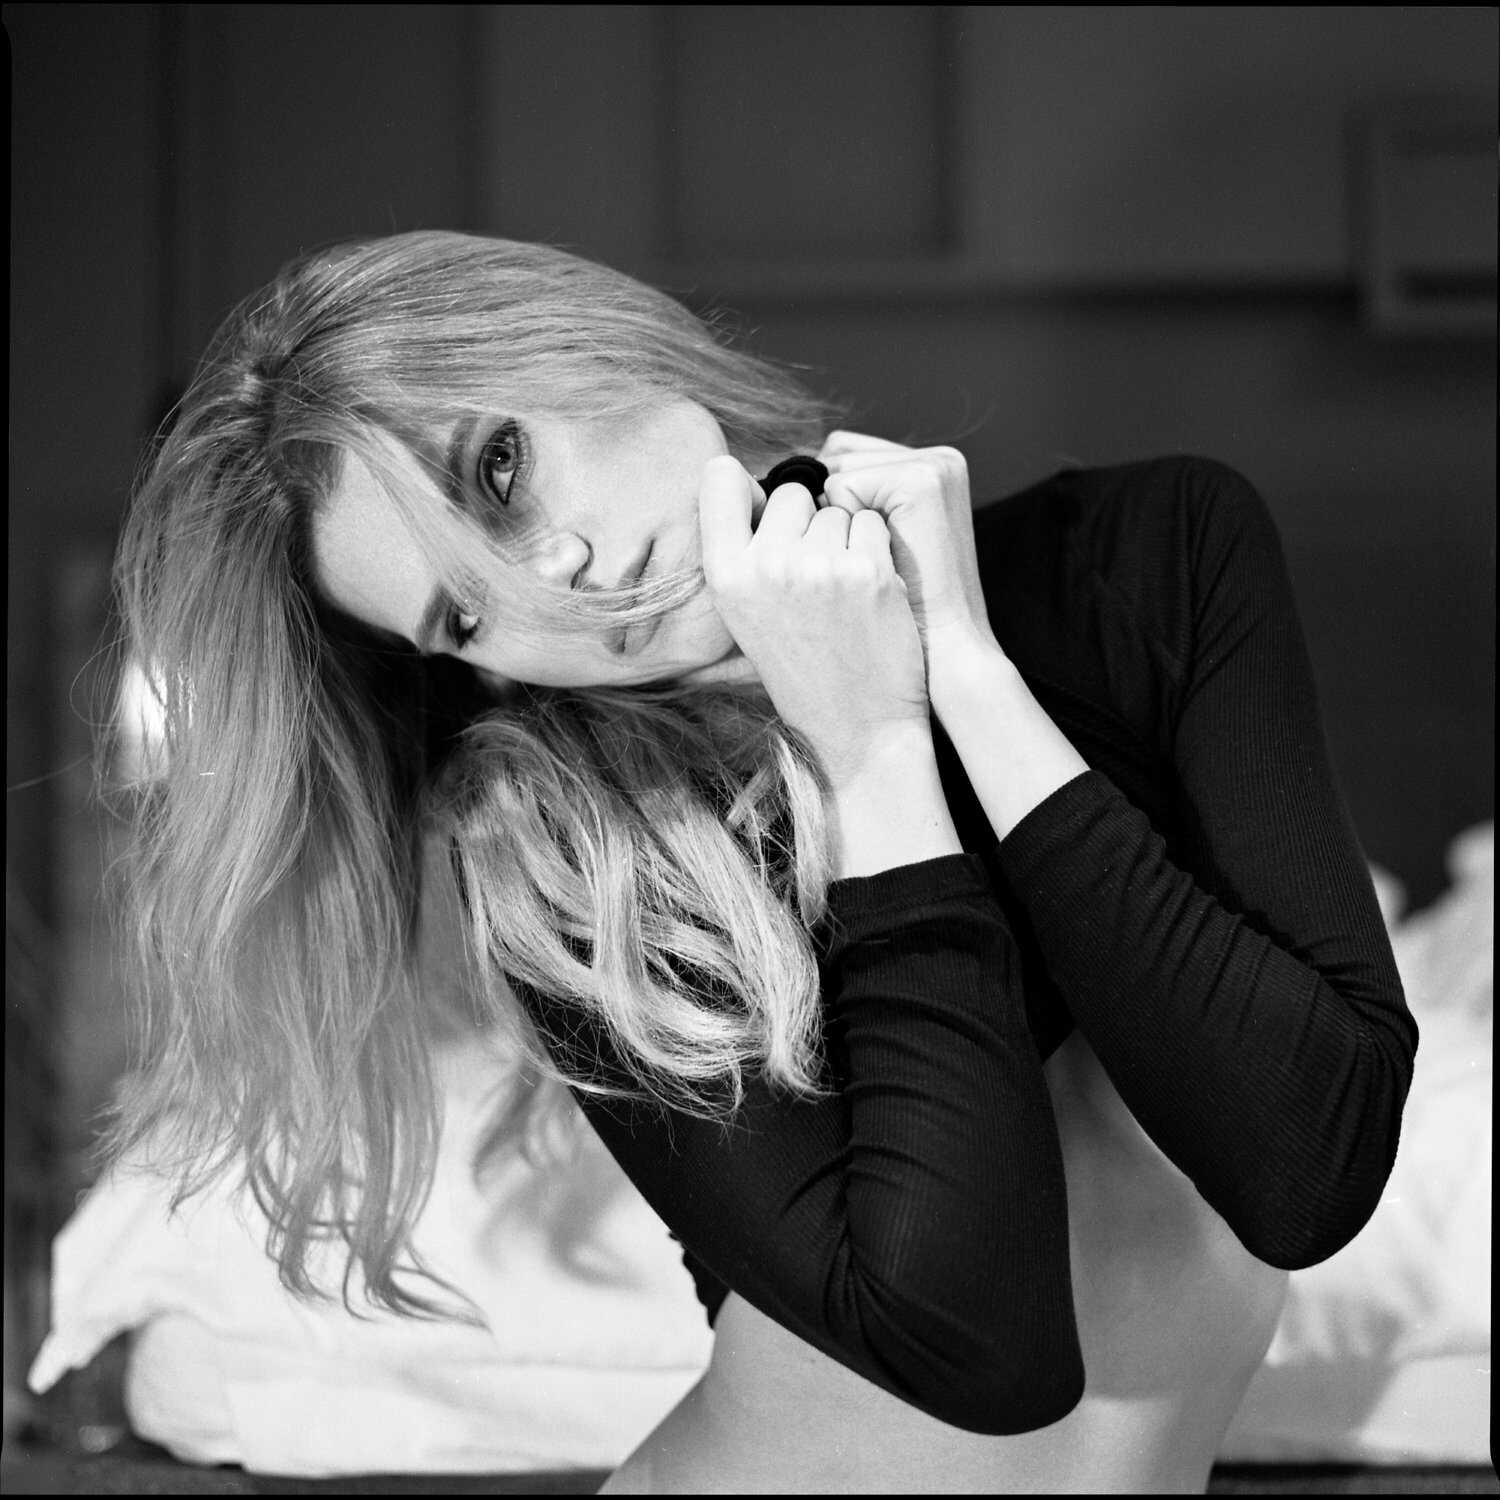 Γυμνές φωτογραφίες της μουνάρας μοντέλου Olesia Alter